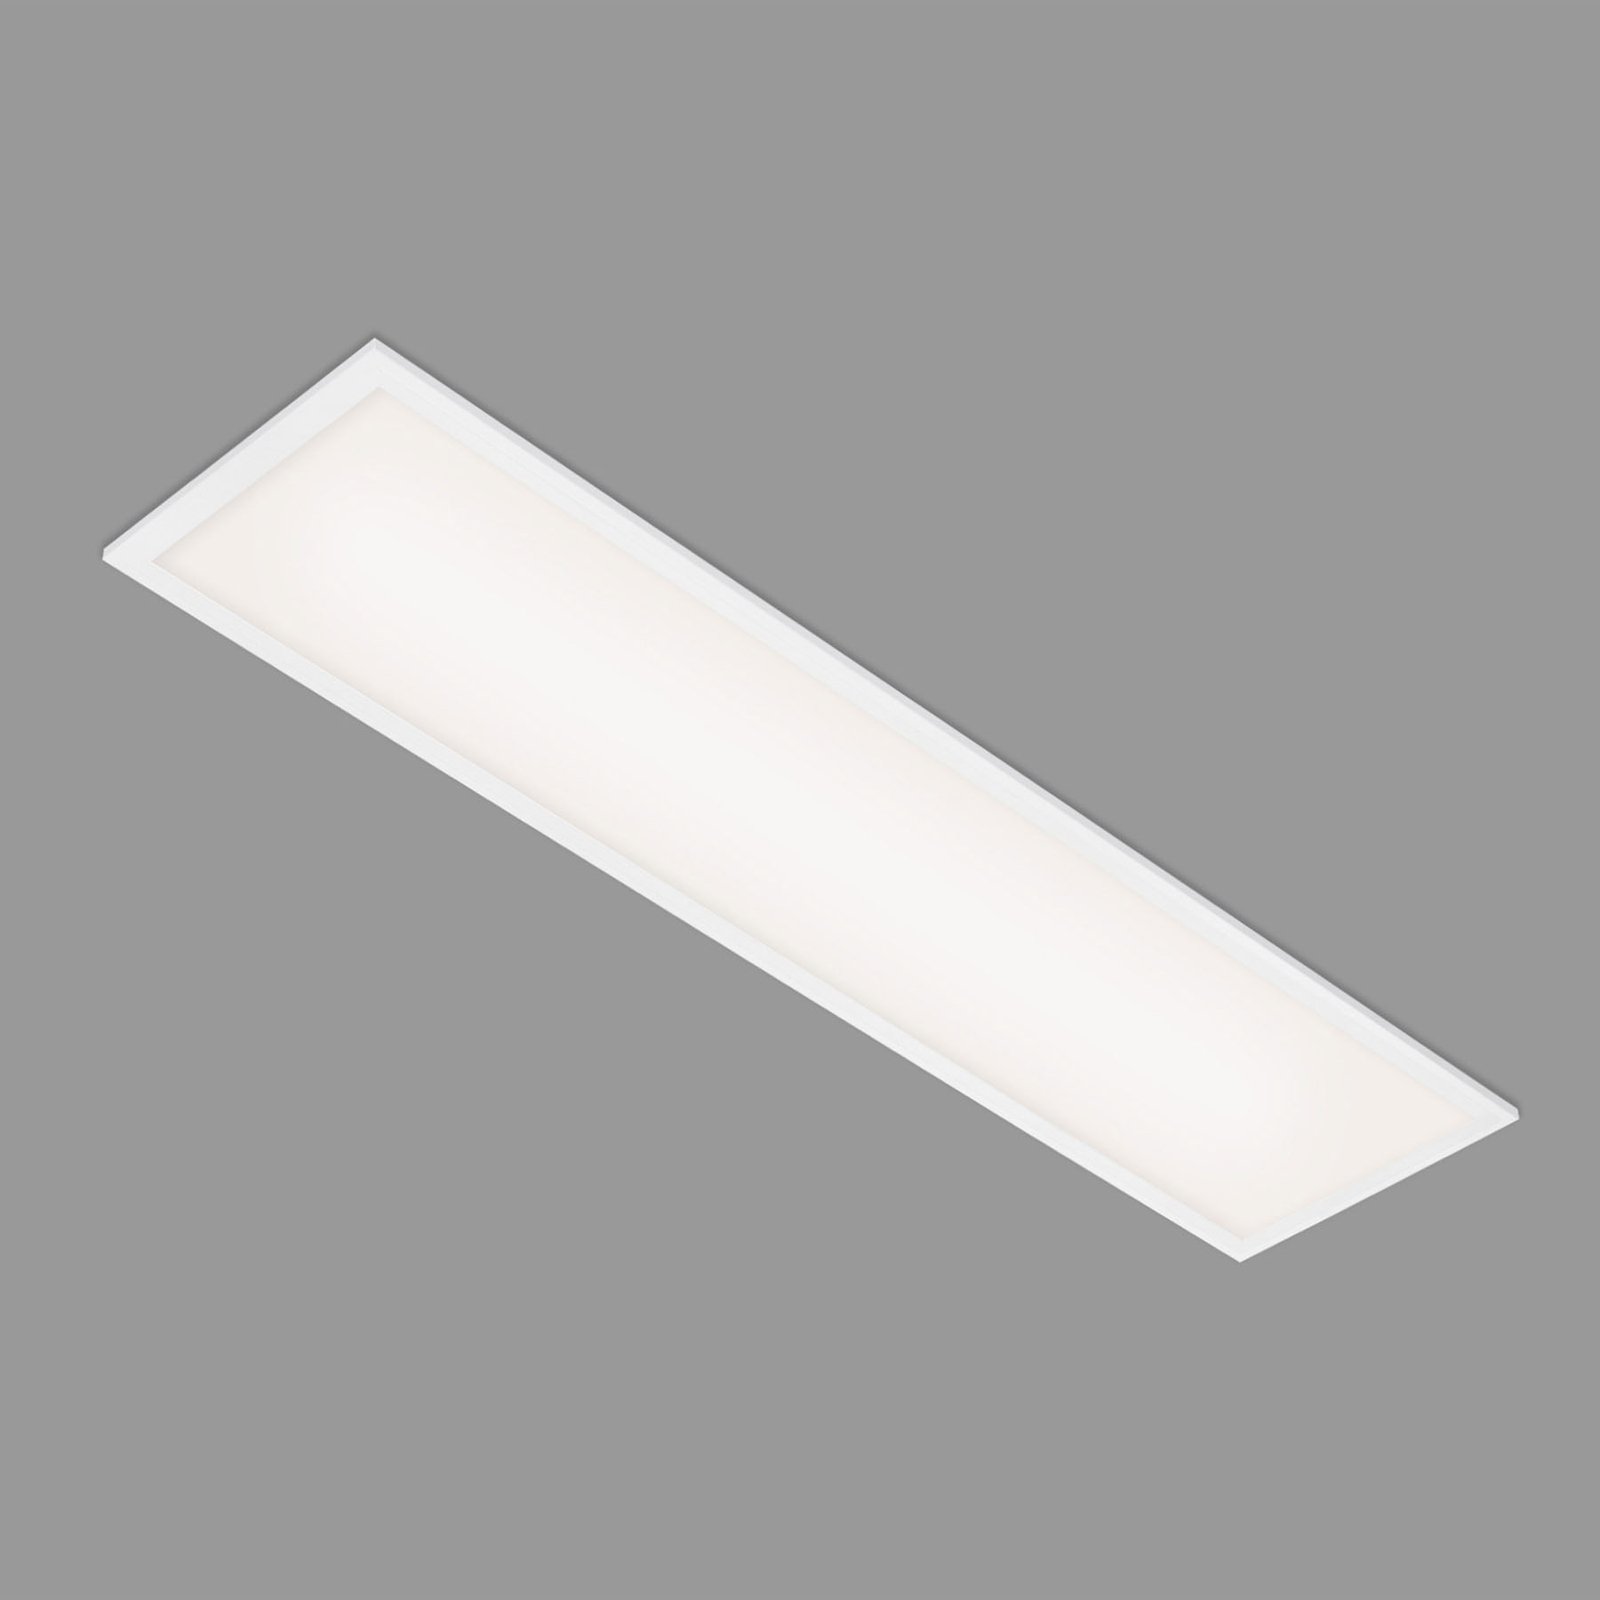 LED πάνελ Απλό, λευκό, εξαιρετικά επίπεδο, 100x25cm